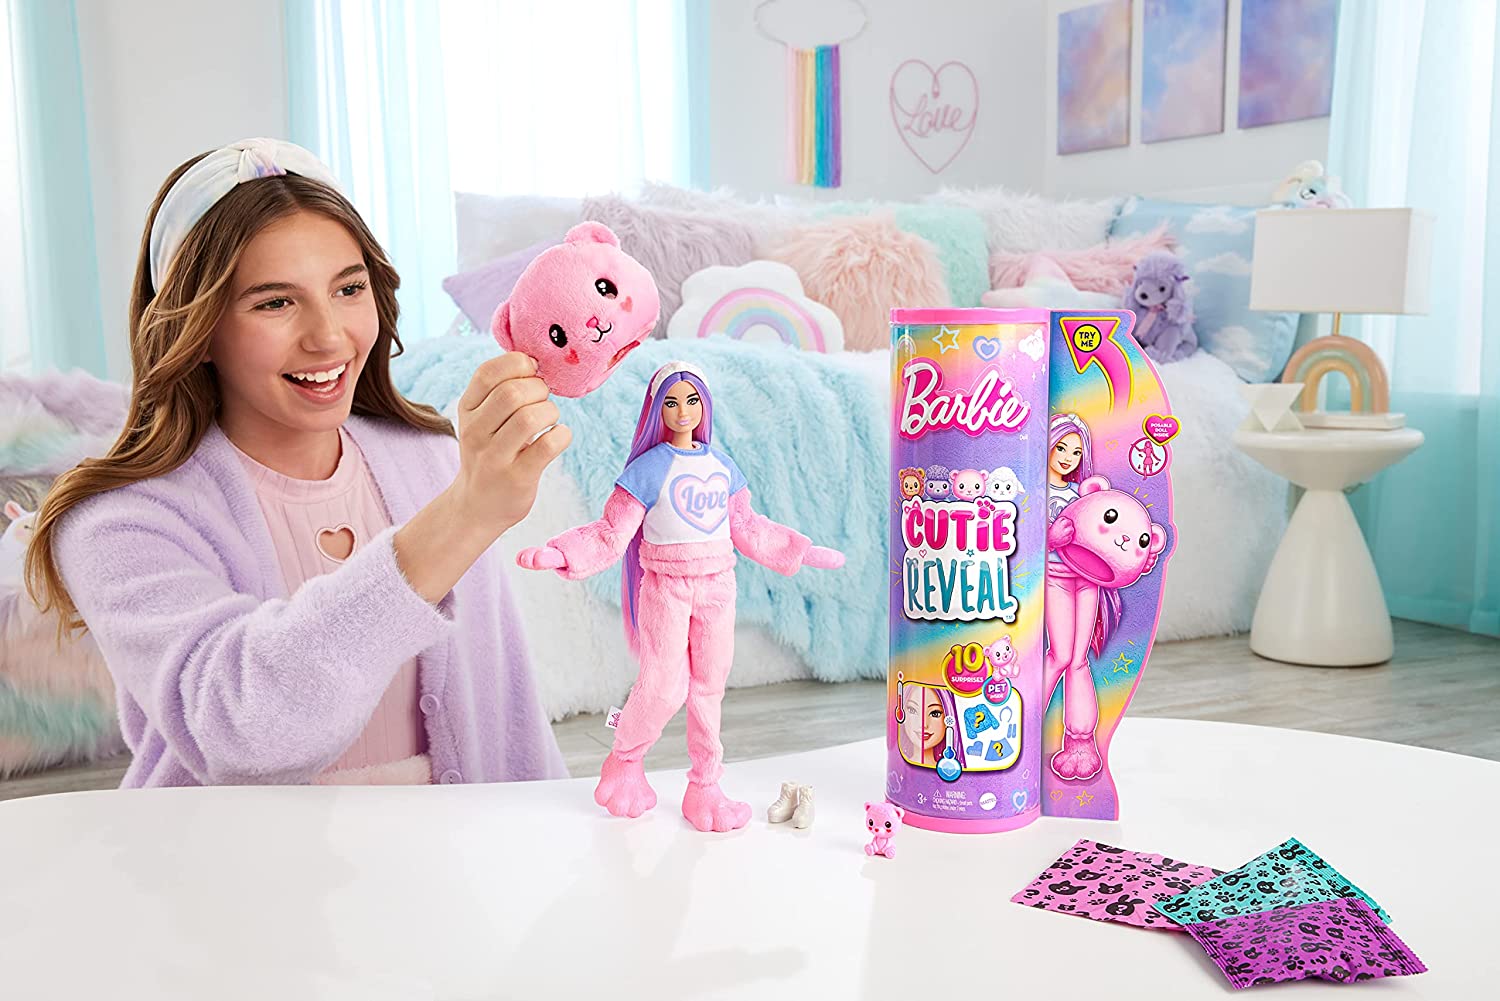 Barbie Cutie Reveal con pelo rosa y disfraz de oso (Nueva versión)